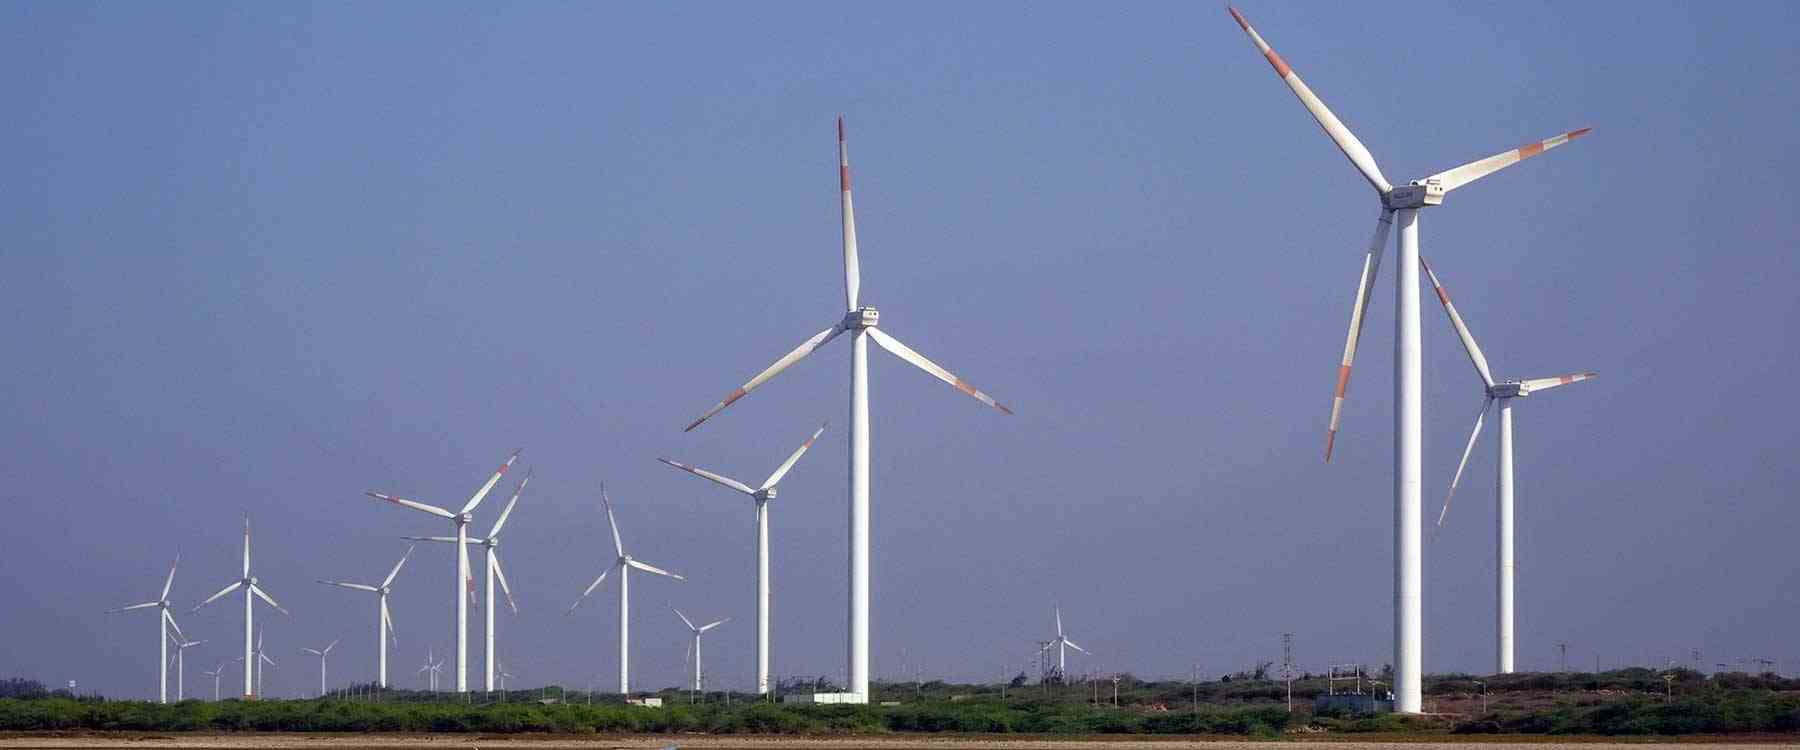 Wind turbines)